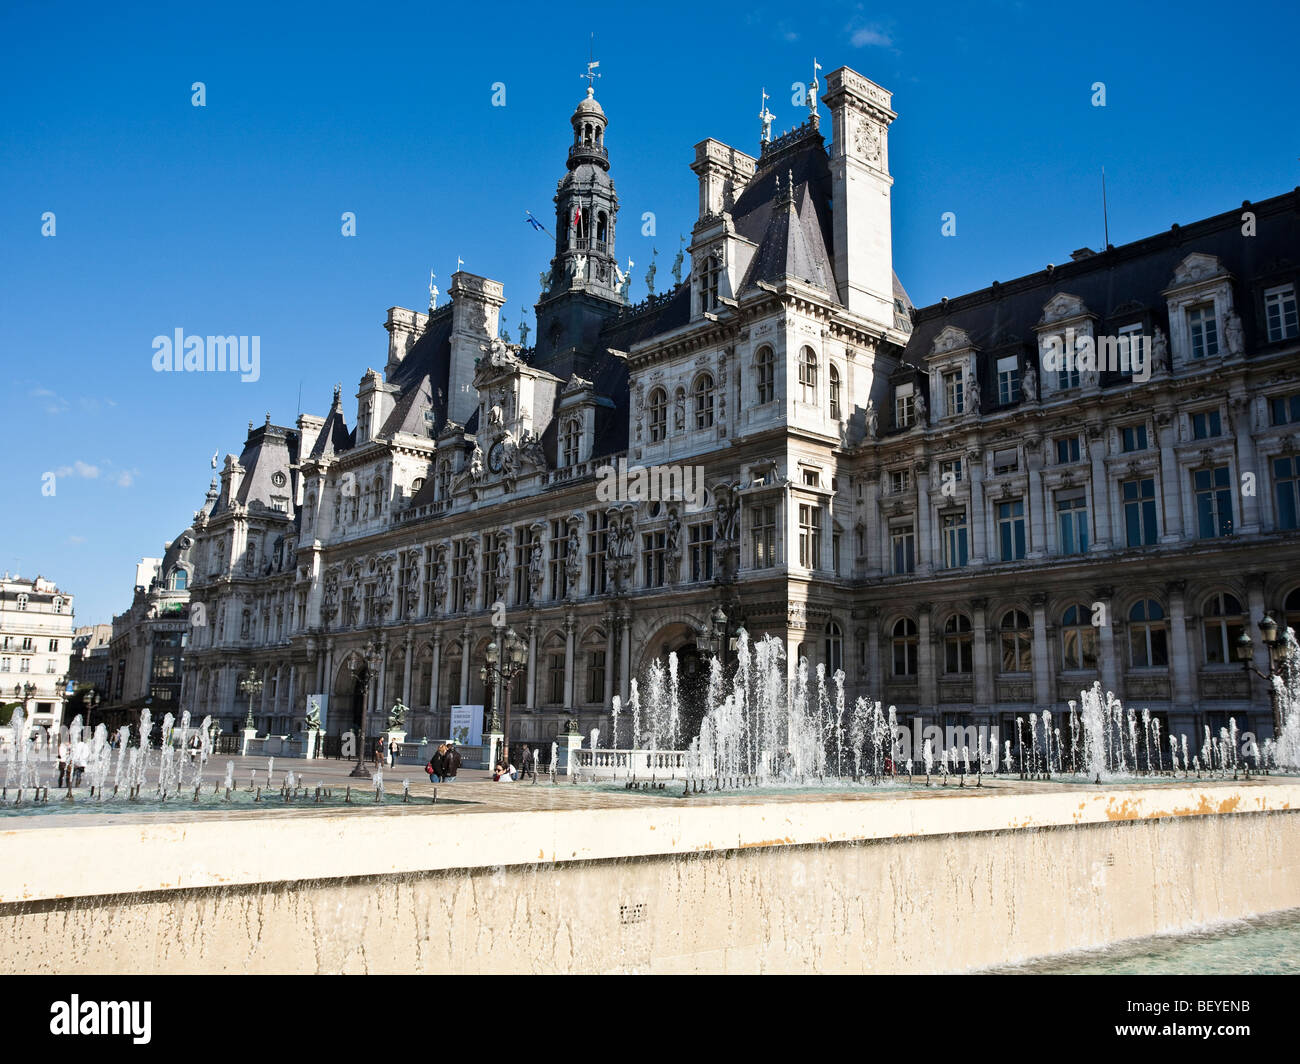 Hôtel de Ville l'hôtel de ville de Paris est une reconstruction du xixe siècle. L'original a été brûlé à la Commune de Paris 1871 Banque D'Images